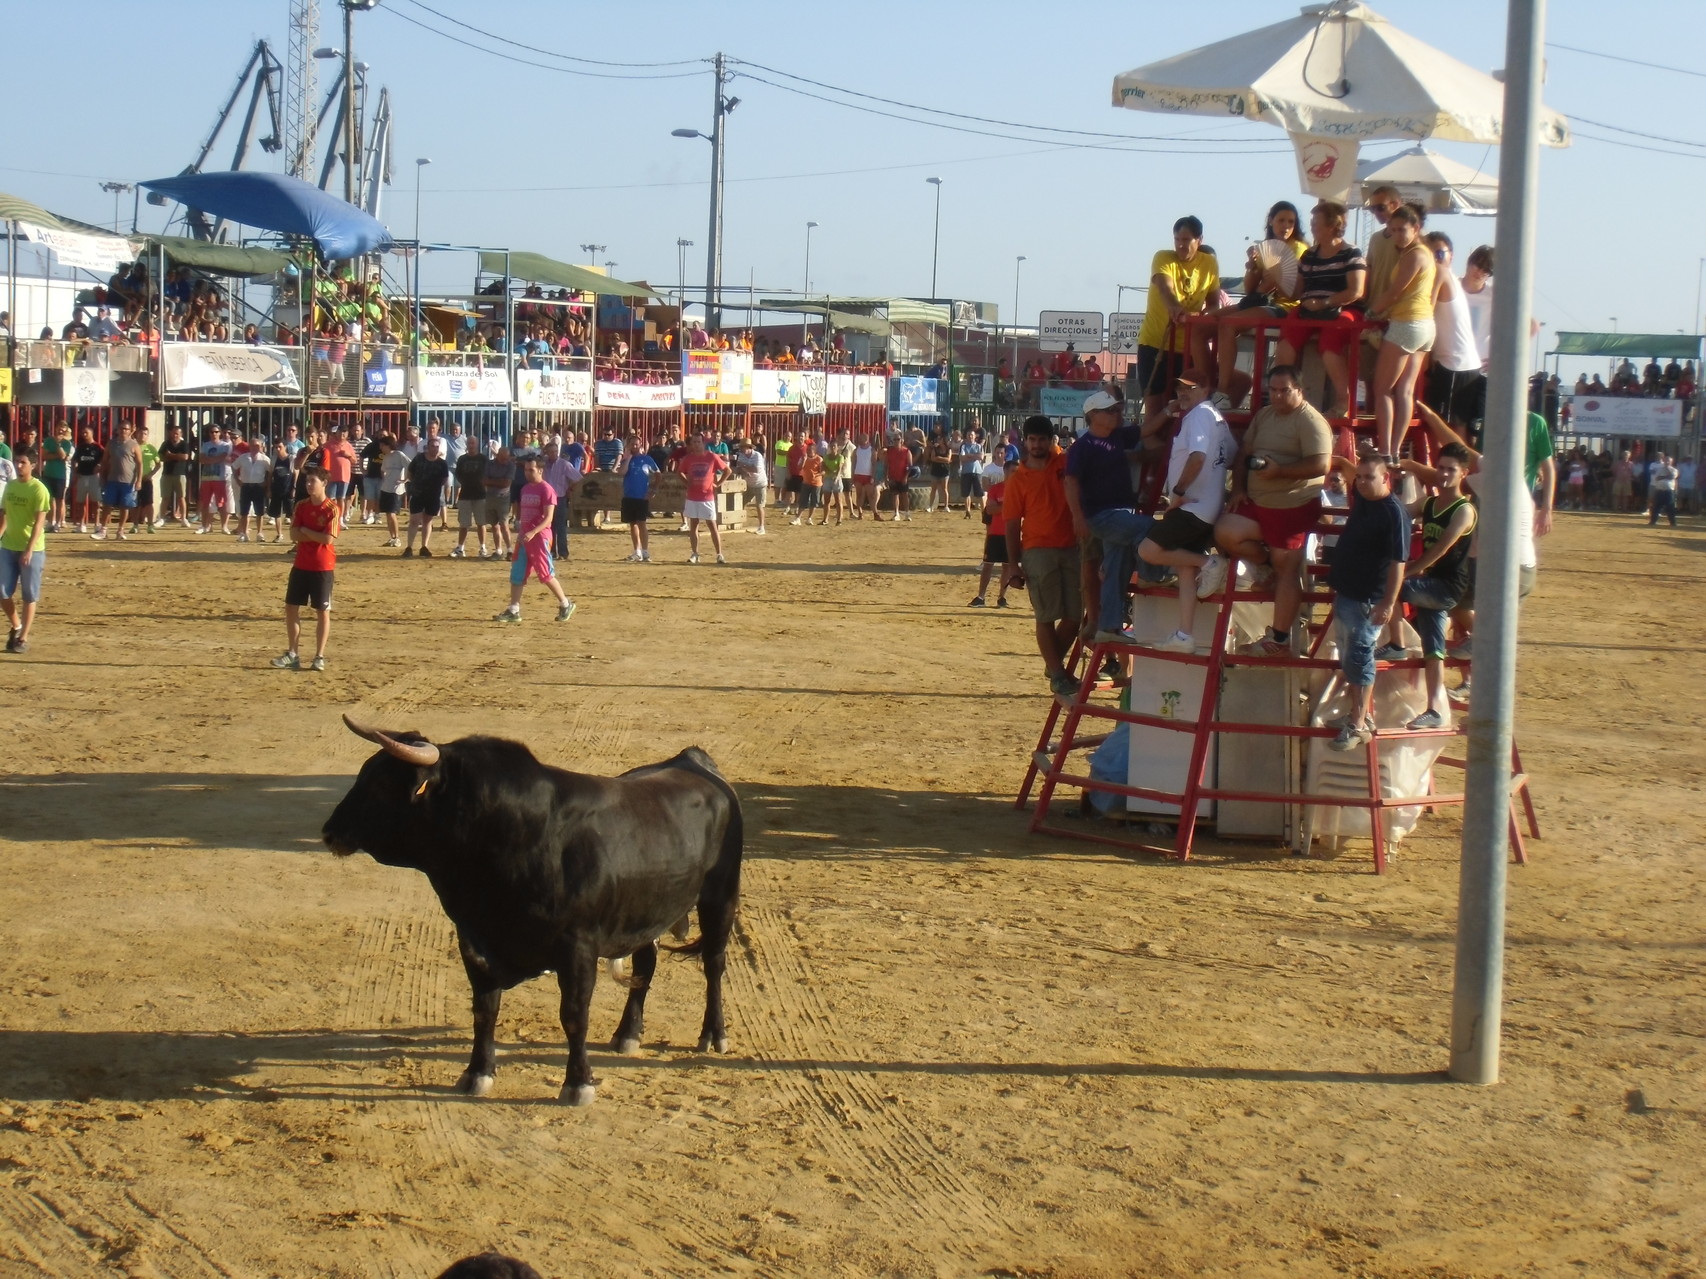 Feria in Puerto de Sagunto